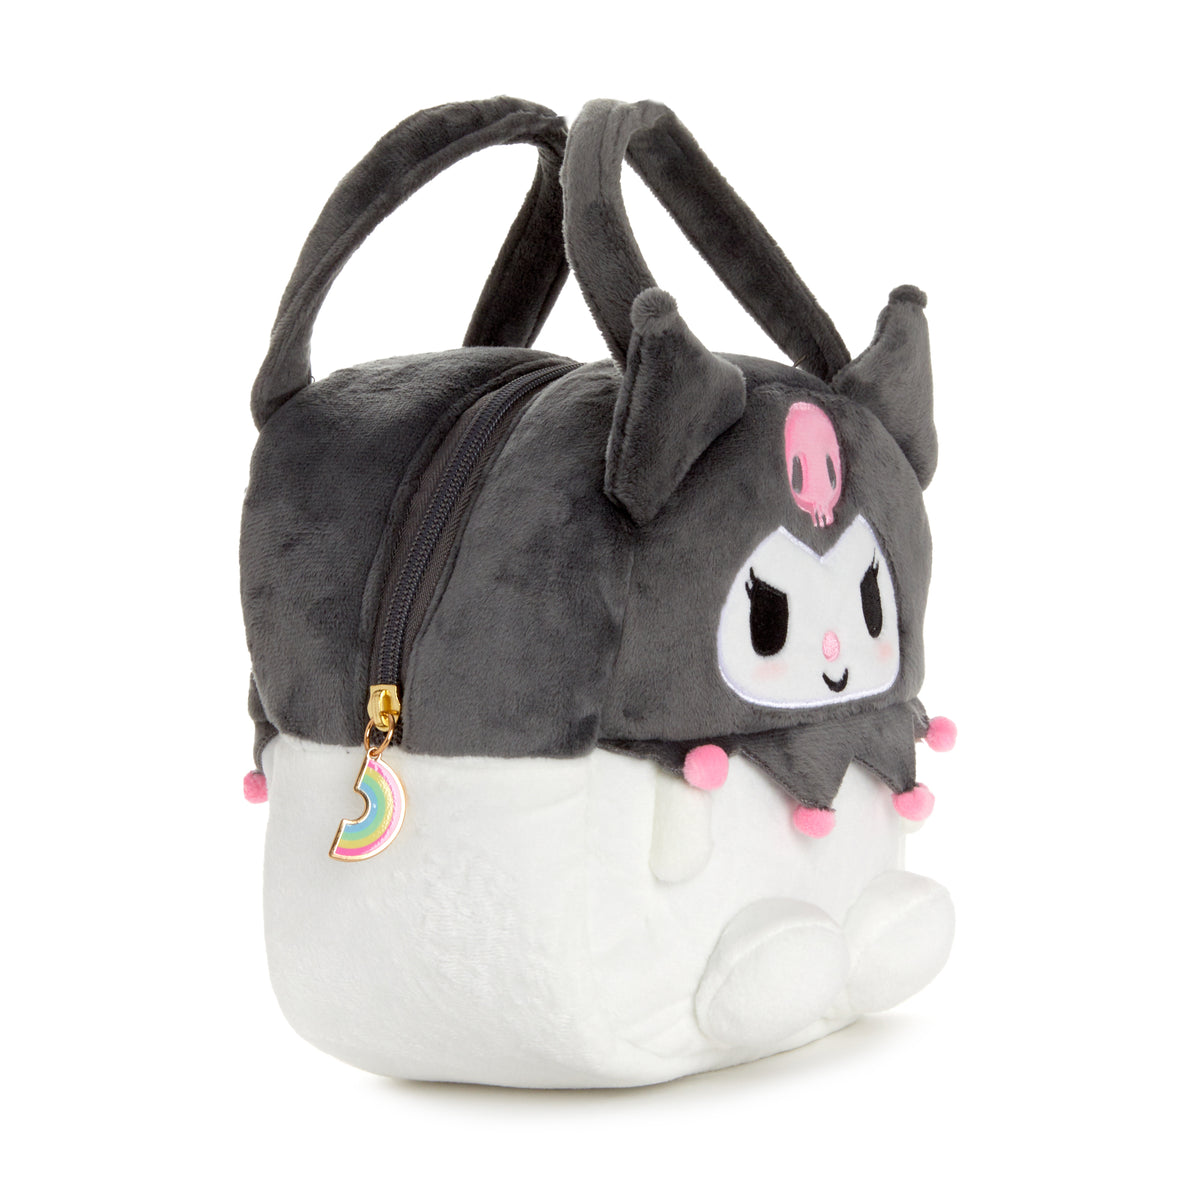 Kuromi Plush Mini Handbag Bags Global Original   